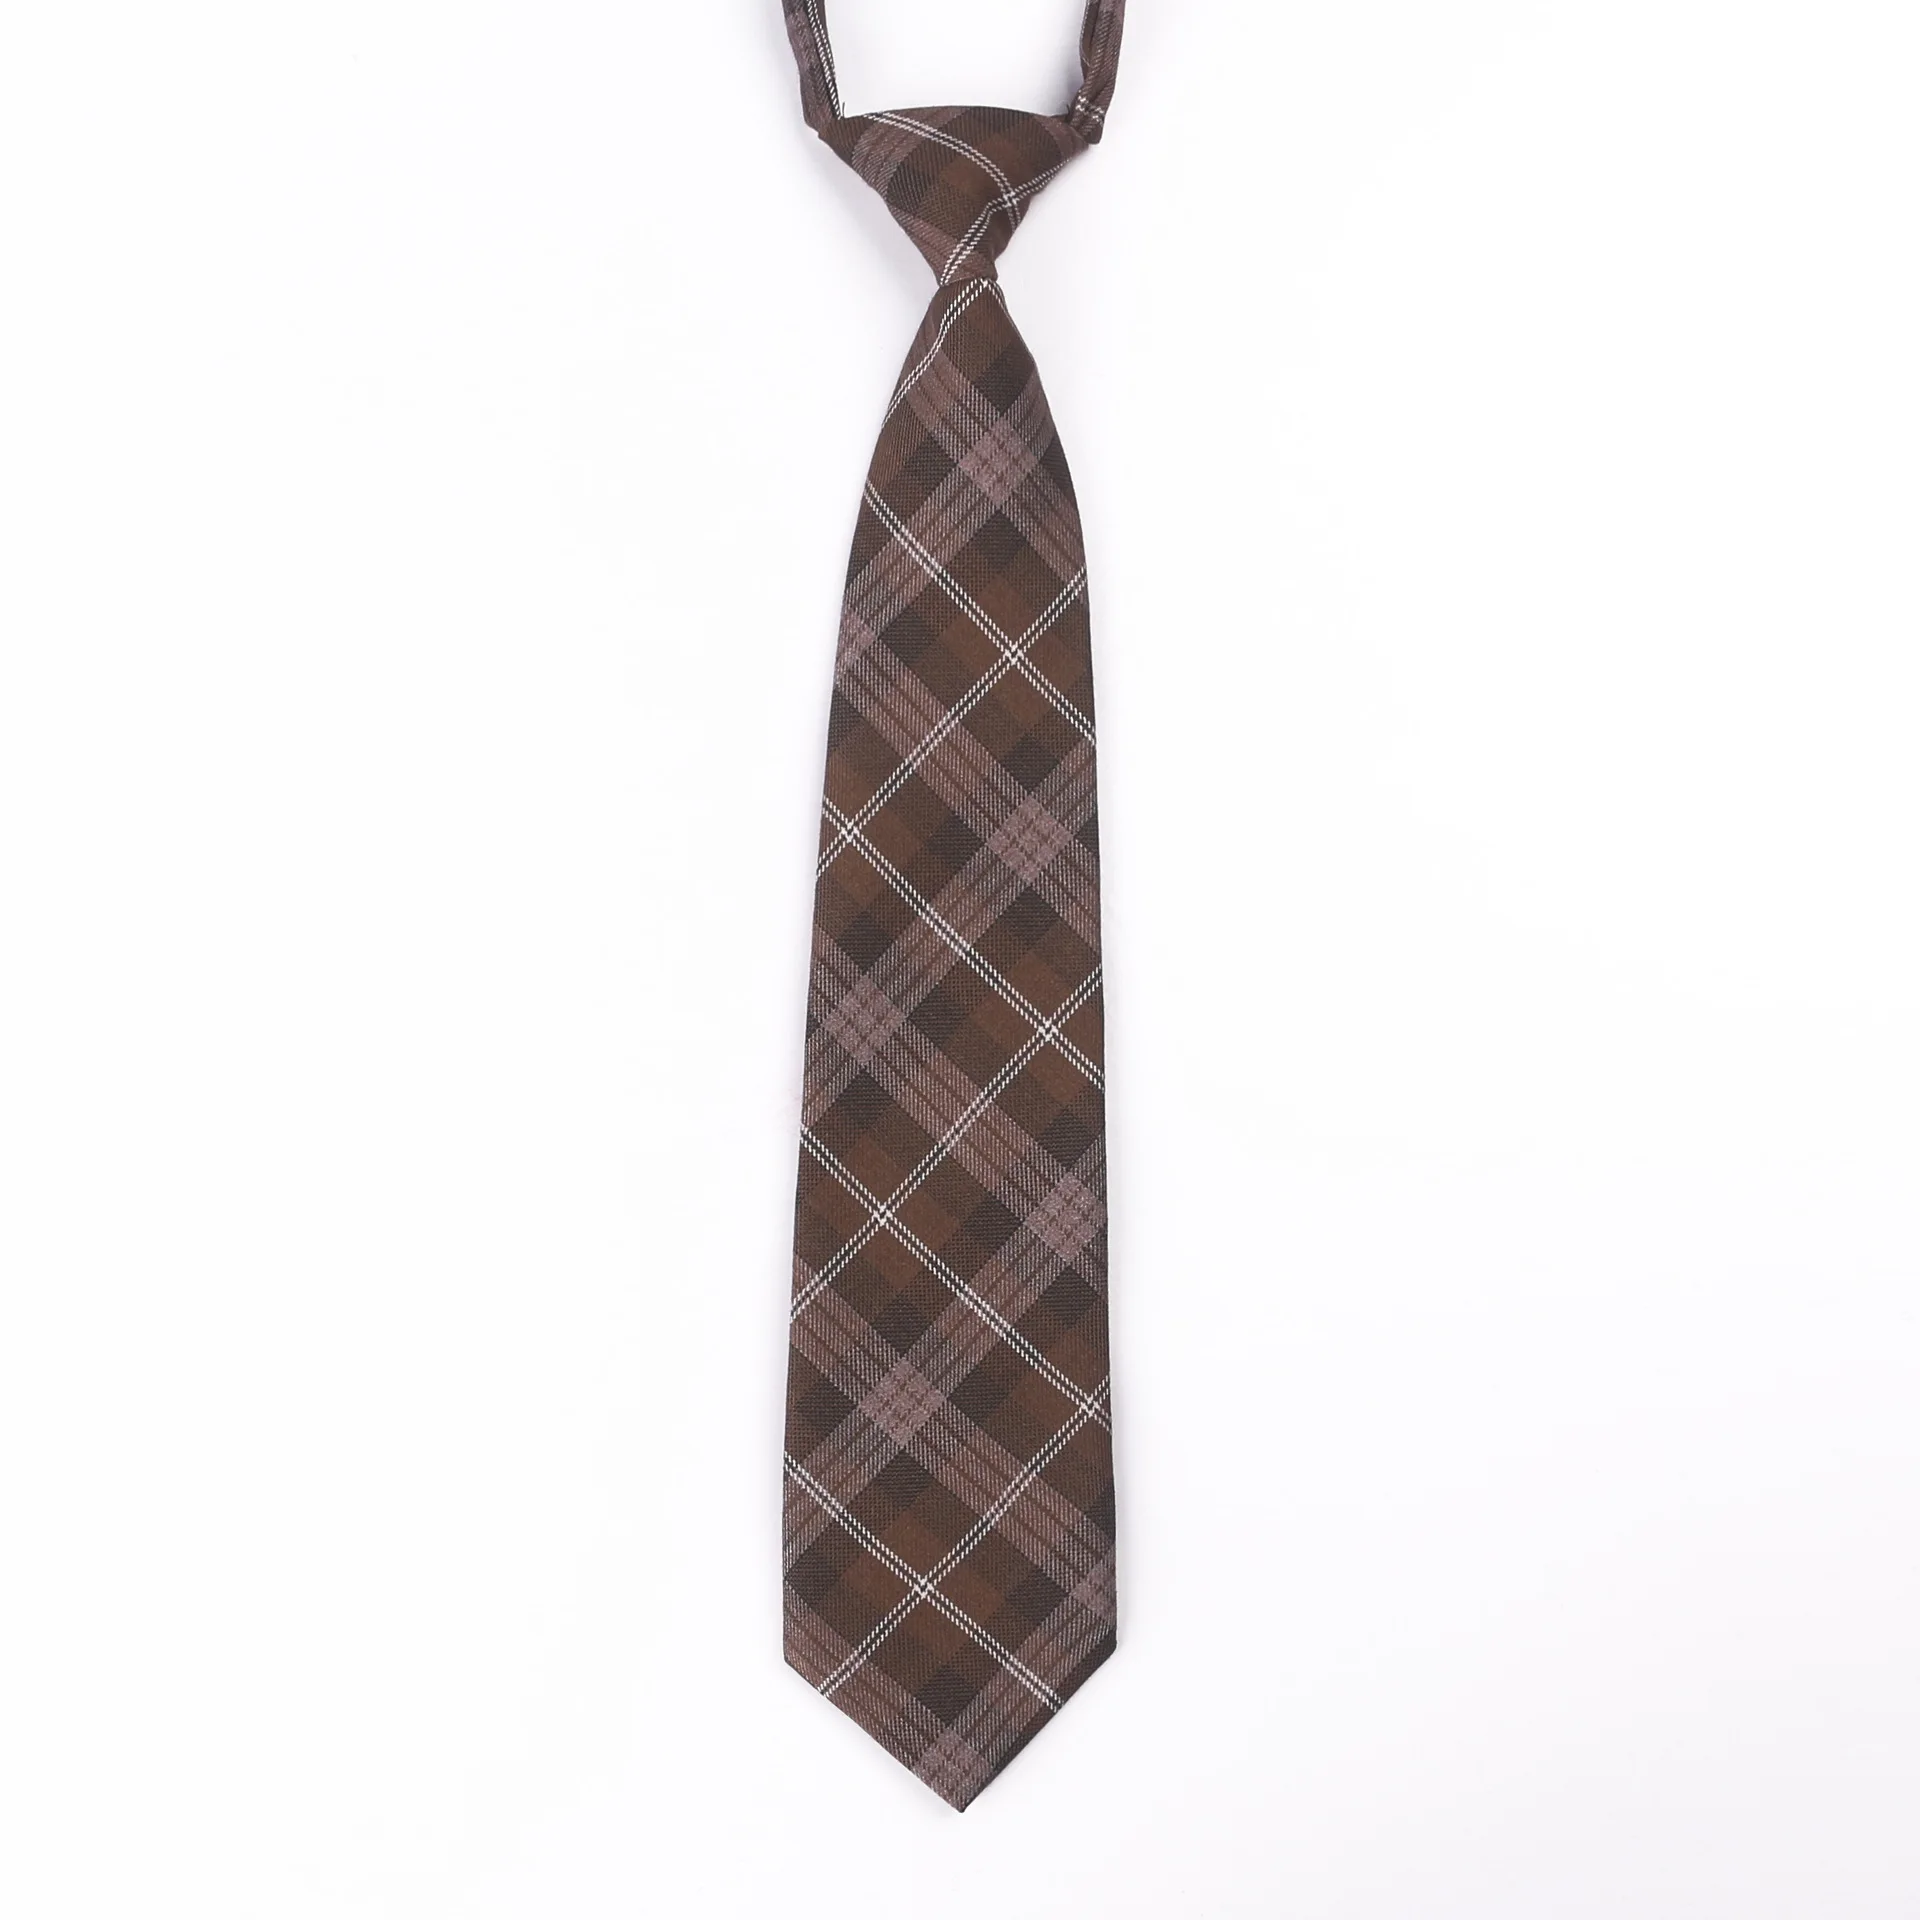 Jk униформы галстук свободный студенческий клетчатый галстук на резиновой резинке галстук хлопок клетчатый японский студенческий униформы галстук модный Индивидуальный - Цвет: CT533C